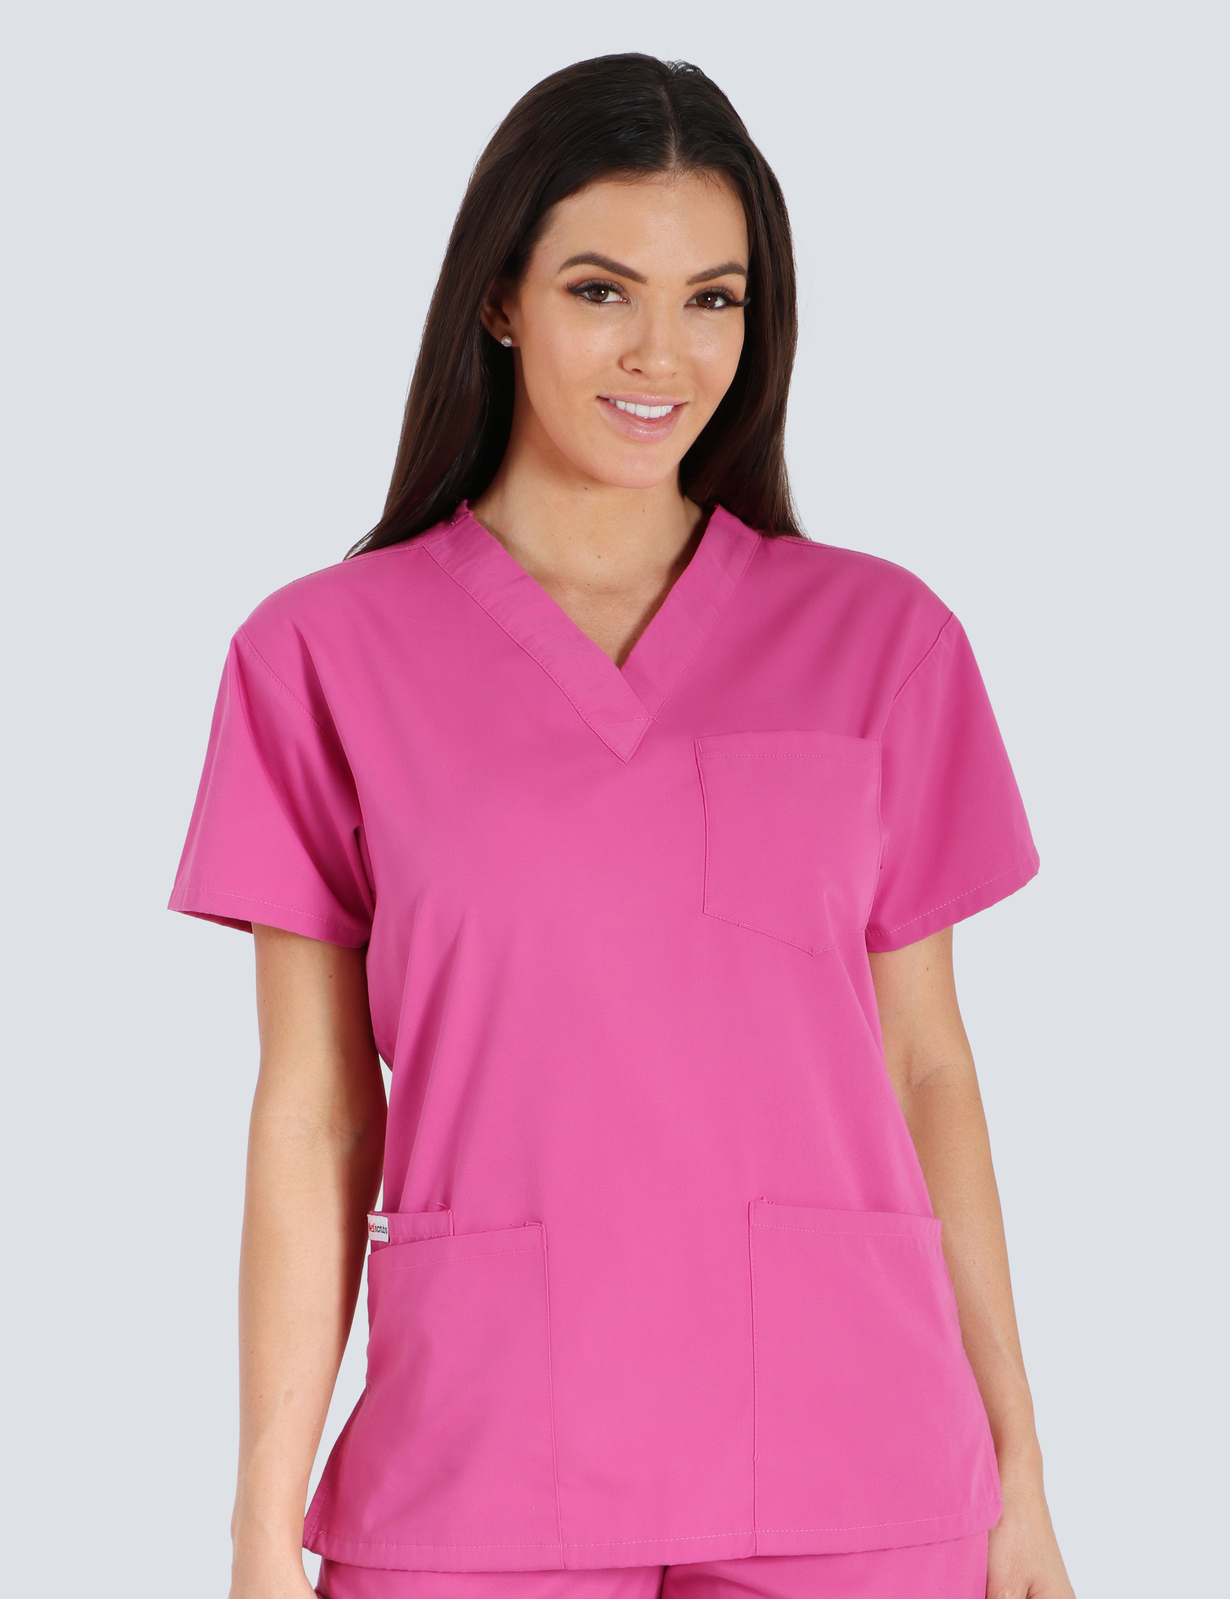 Queensland Children's Hospital Emergency Department Doctor Uniform Top  Bundle (4 Pocket Top in Pink  incl Logos)